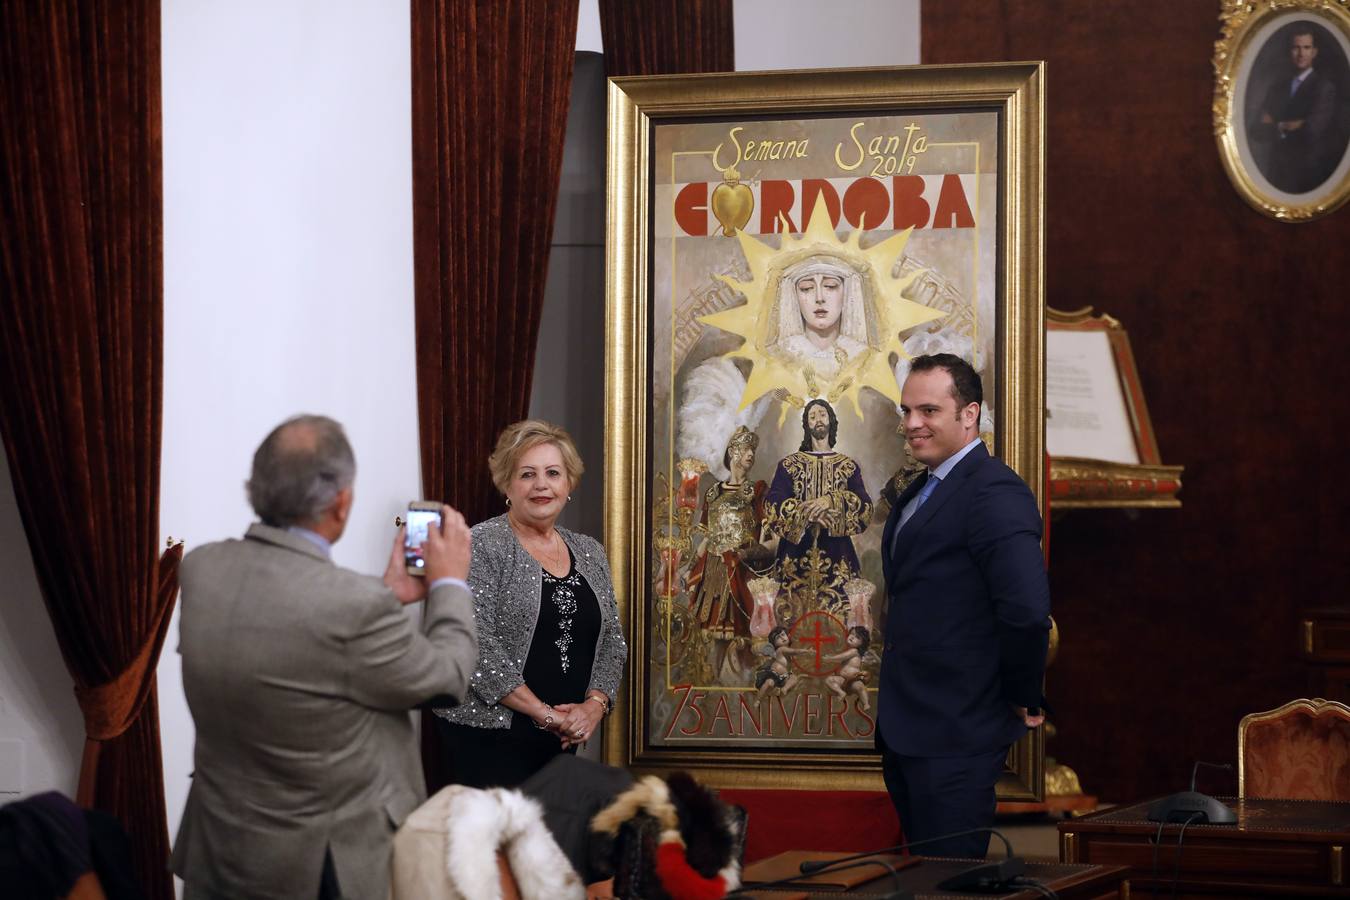 La presentación del cartel de la Semana Santa de Córdoba de 2019, en imágenes